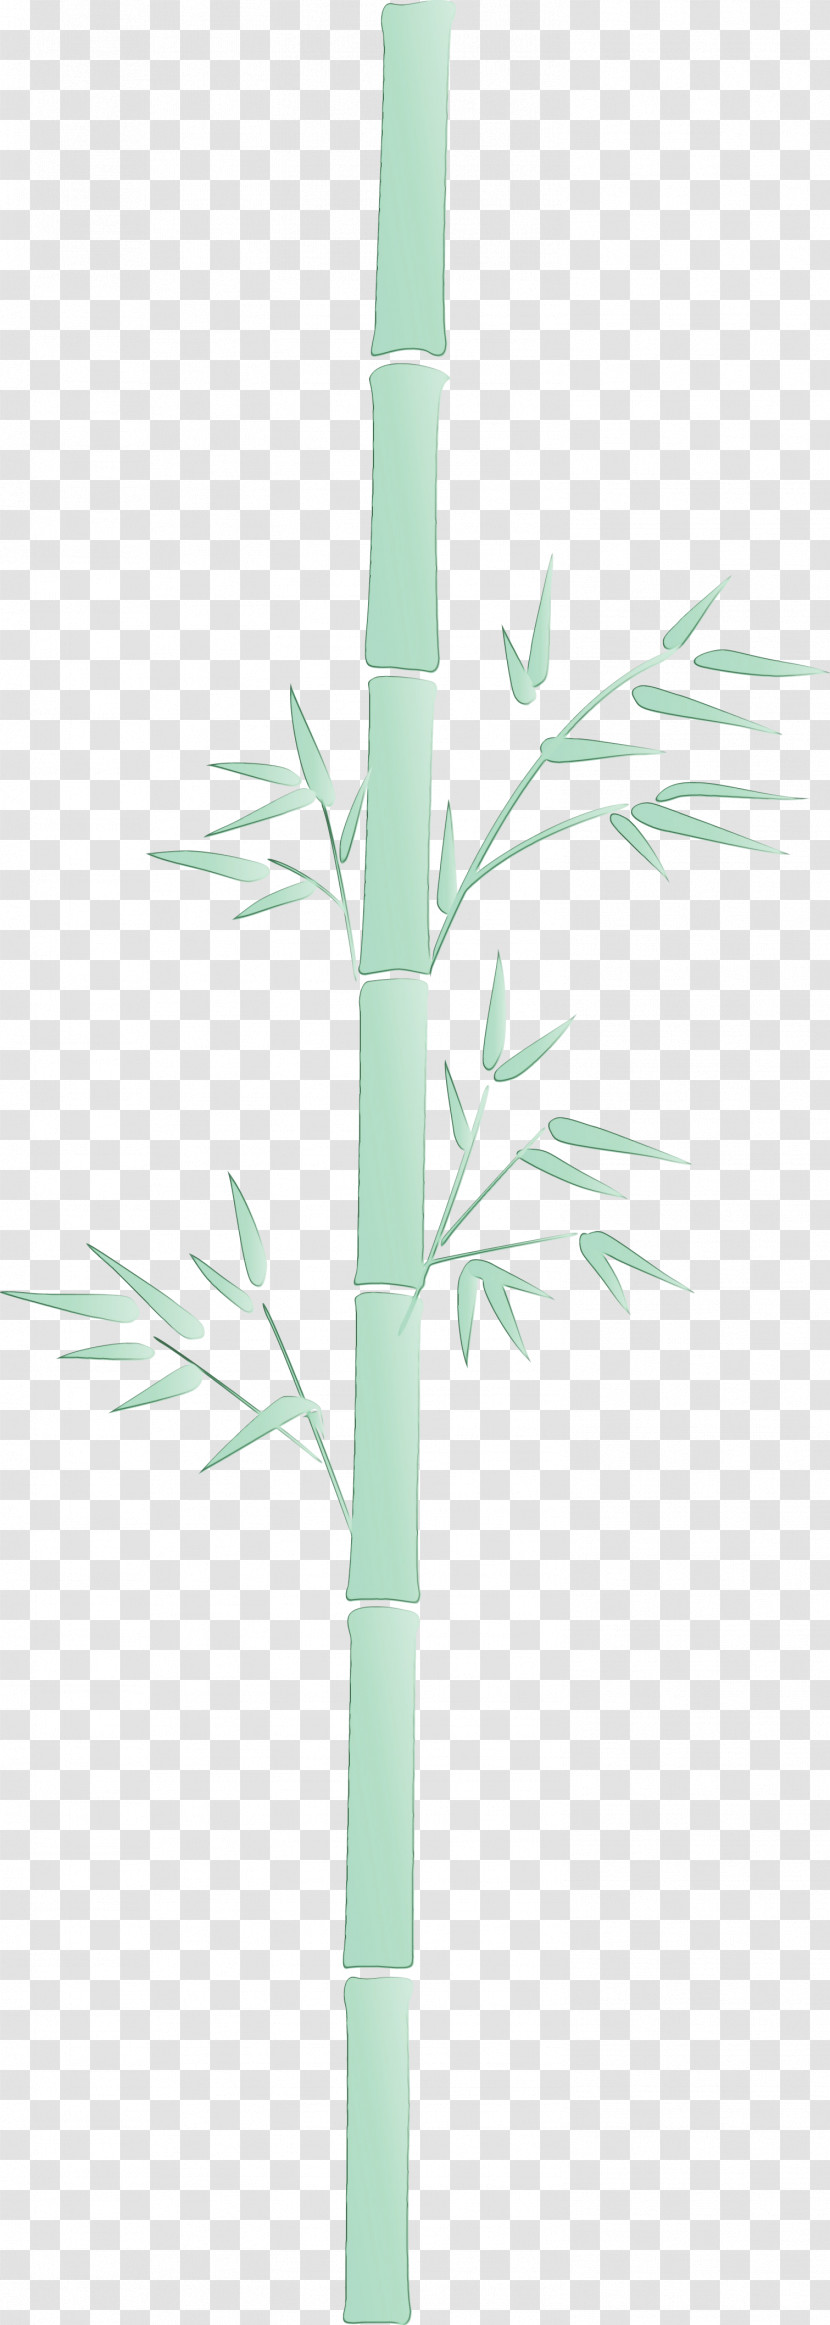 Leaf Plant Bamboo Plant Stem Branch Transparent PNG